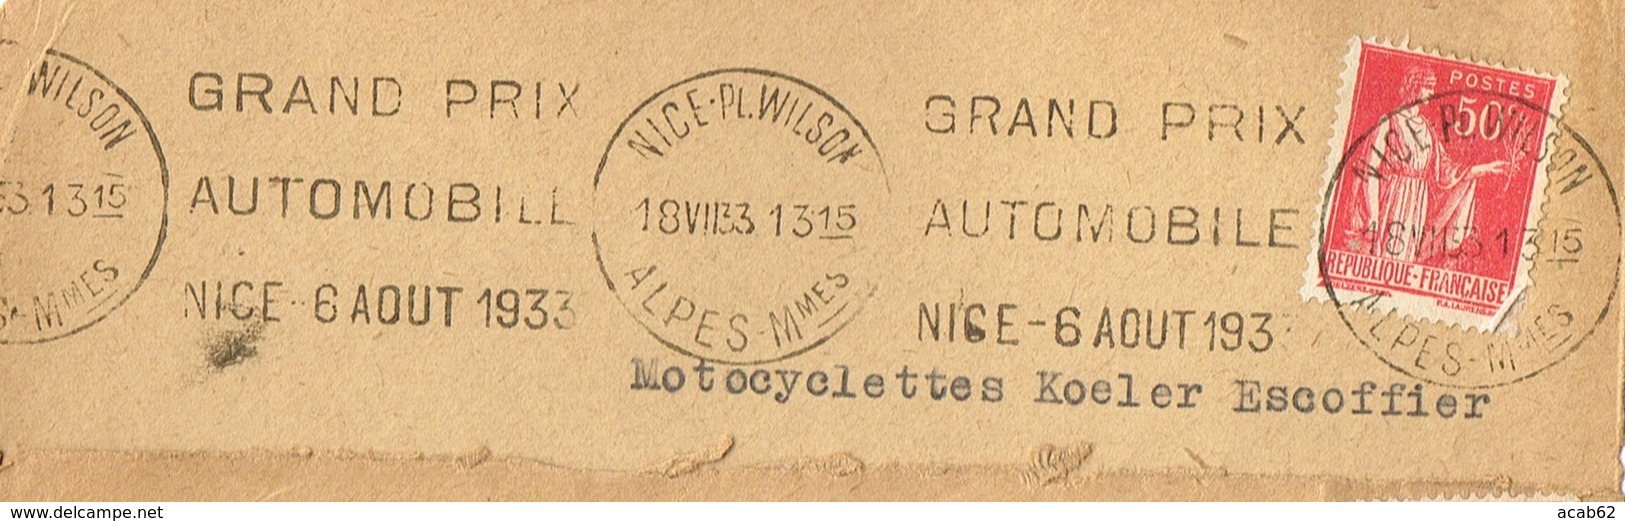 France. Flamme. Nice.Grand Prix Automobile. 18/VII/33 - Sellados Mecánicos (Publicitario)